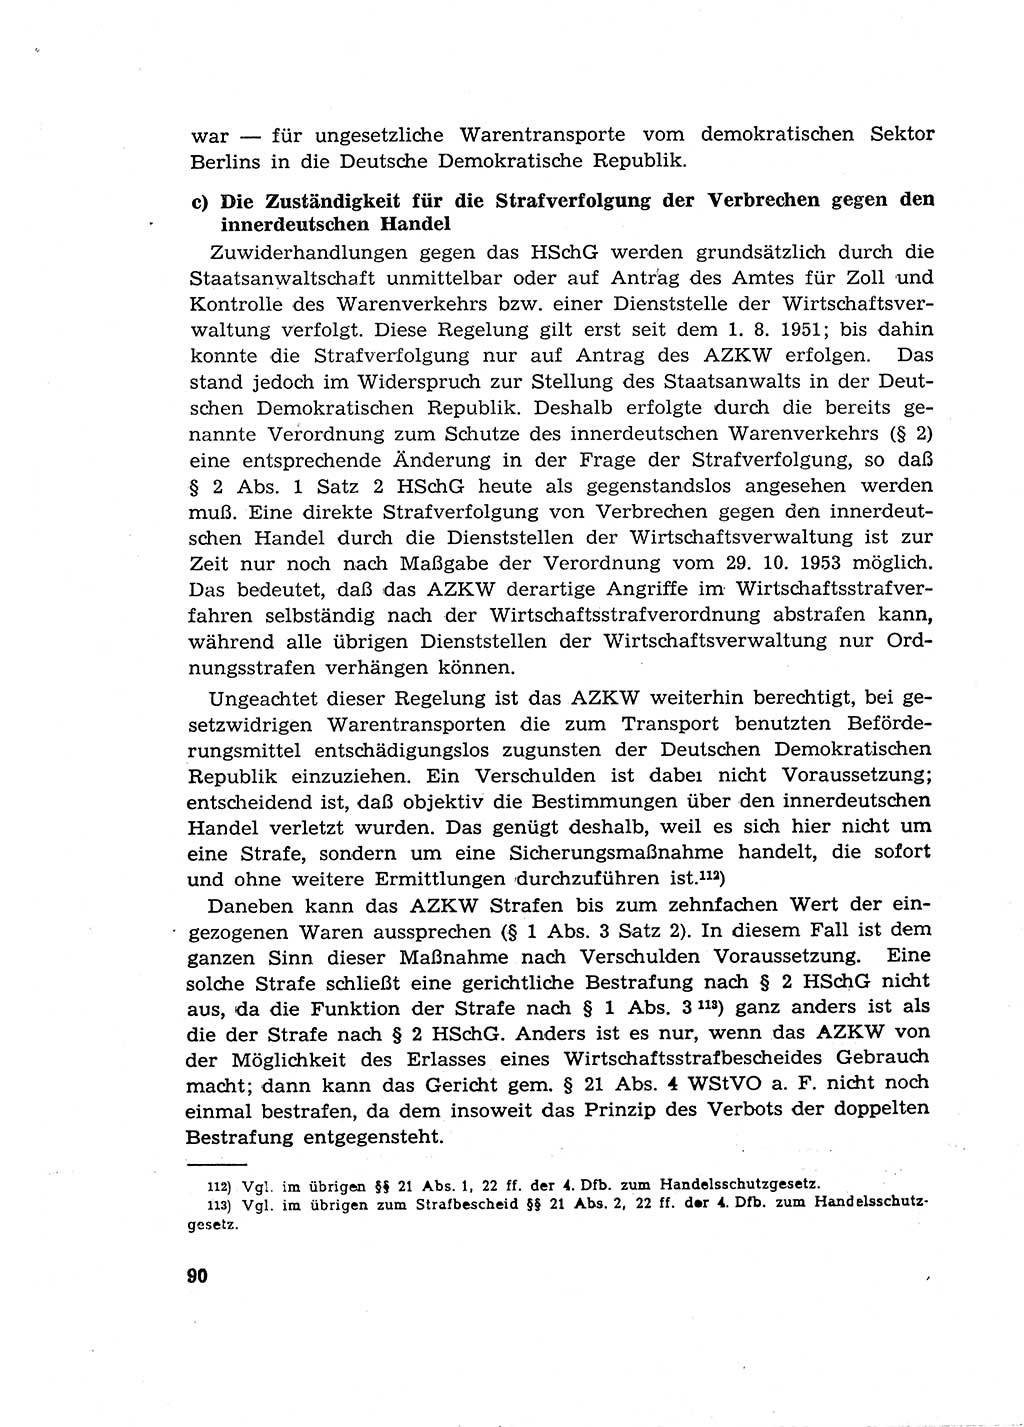 Materialien zum Strafrecht, Besonderer Teil [Deutsche Demokratische Republik (DDR)] 1955, Seite 90 (Mat. Strafr. BT DDR 1955, S. 90)